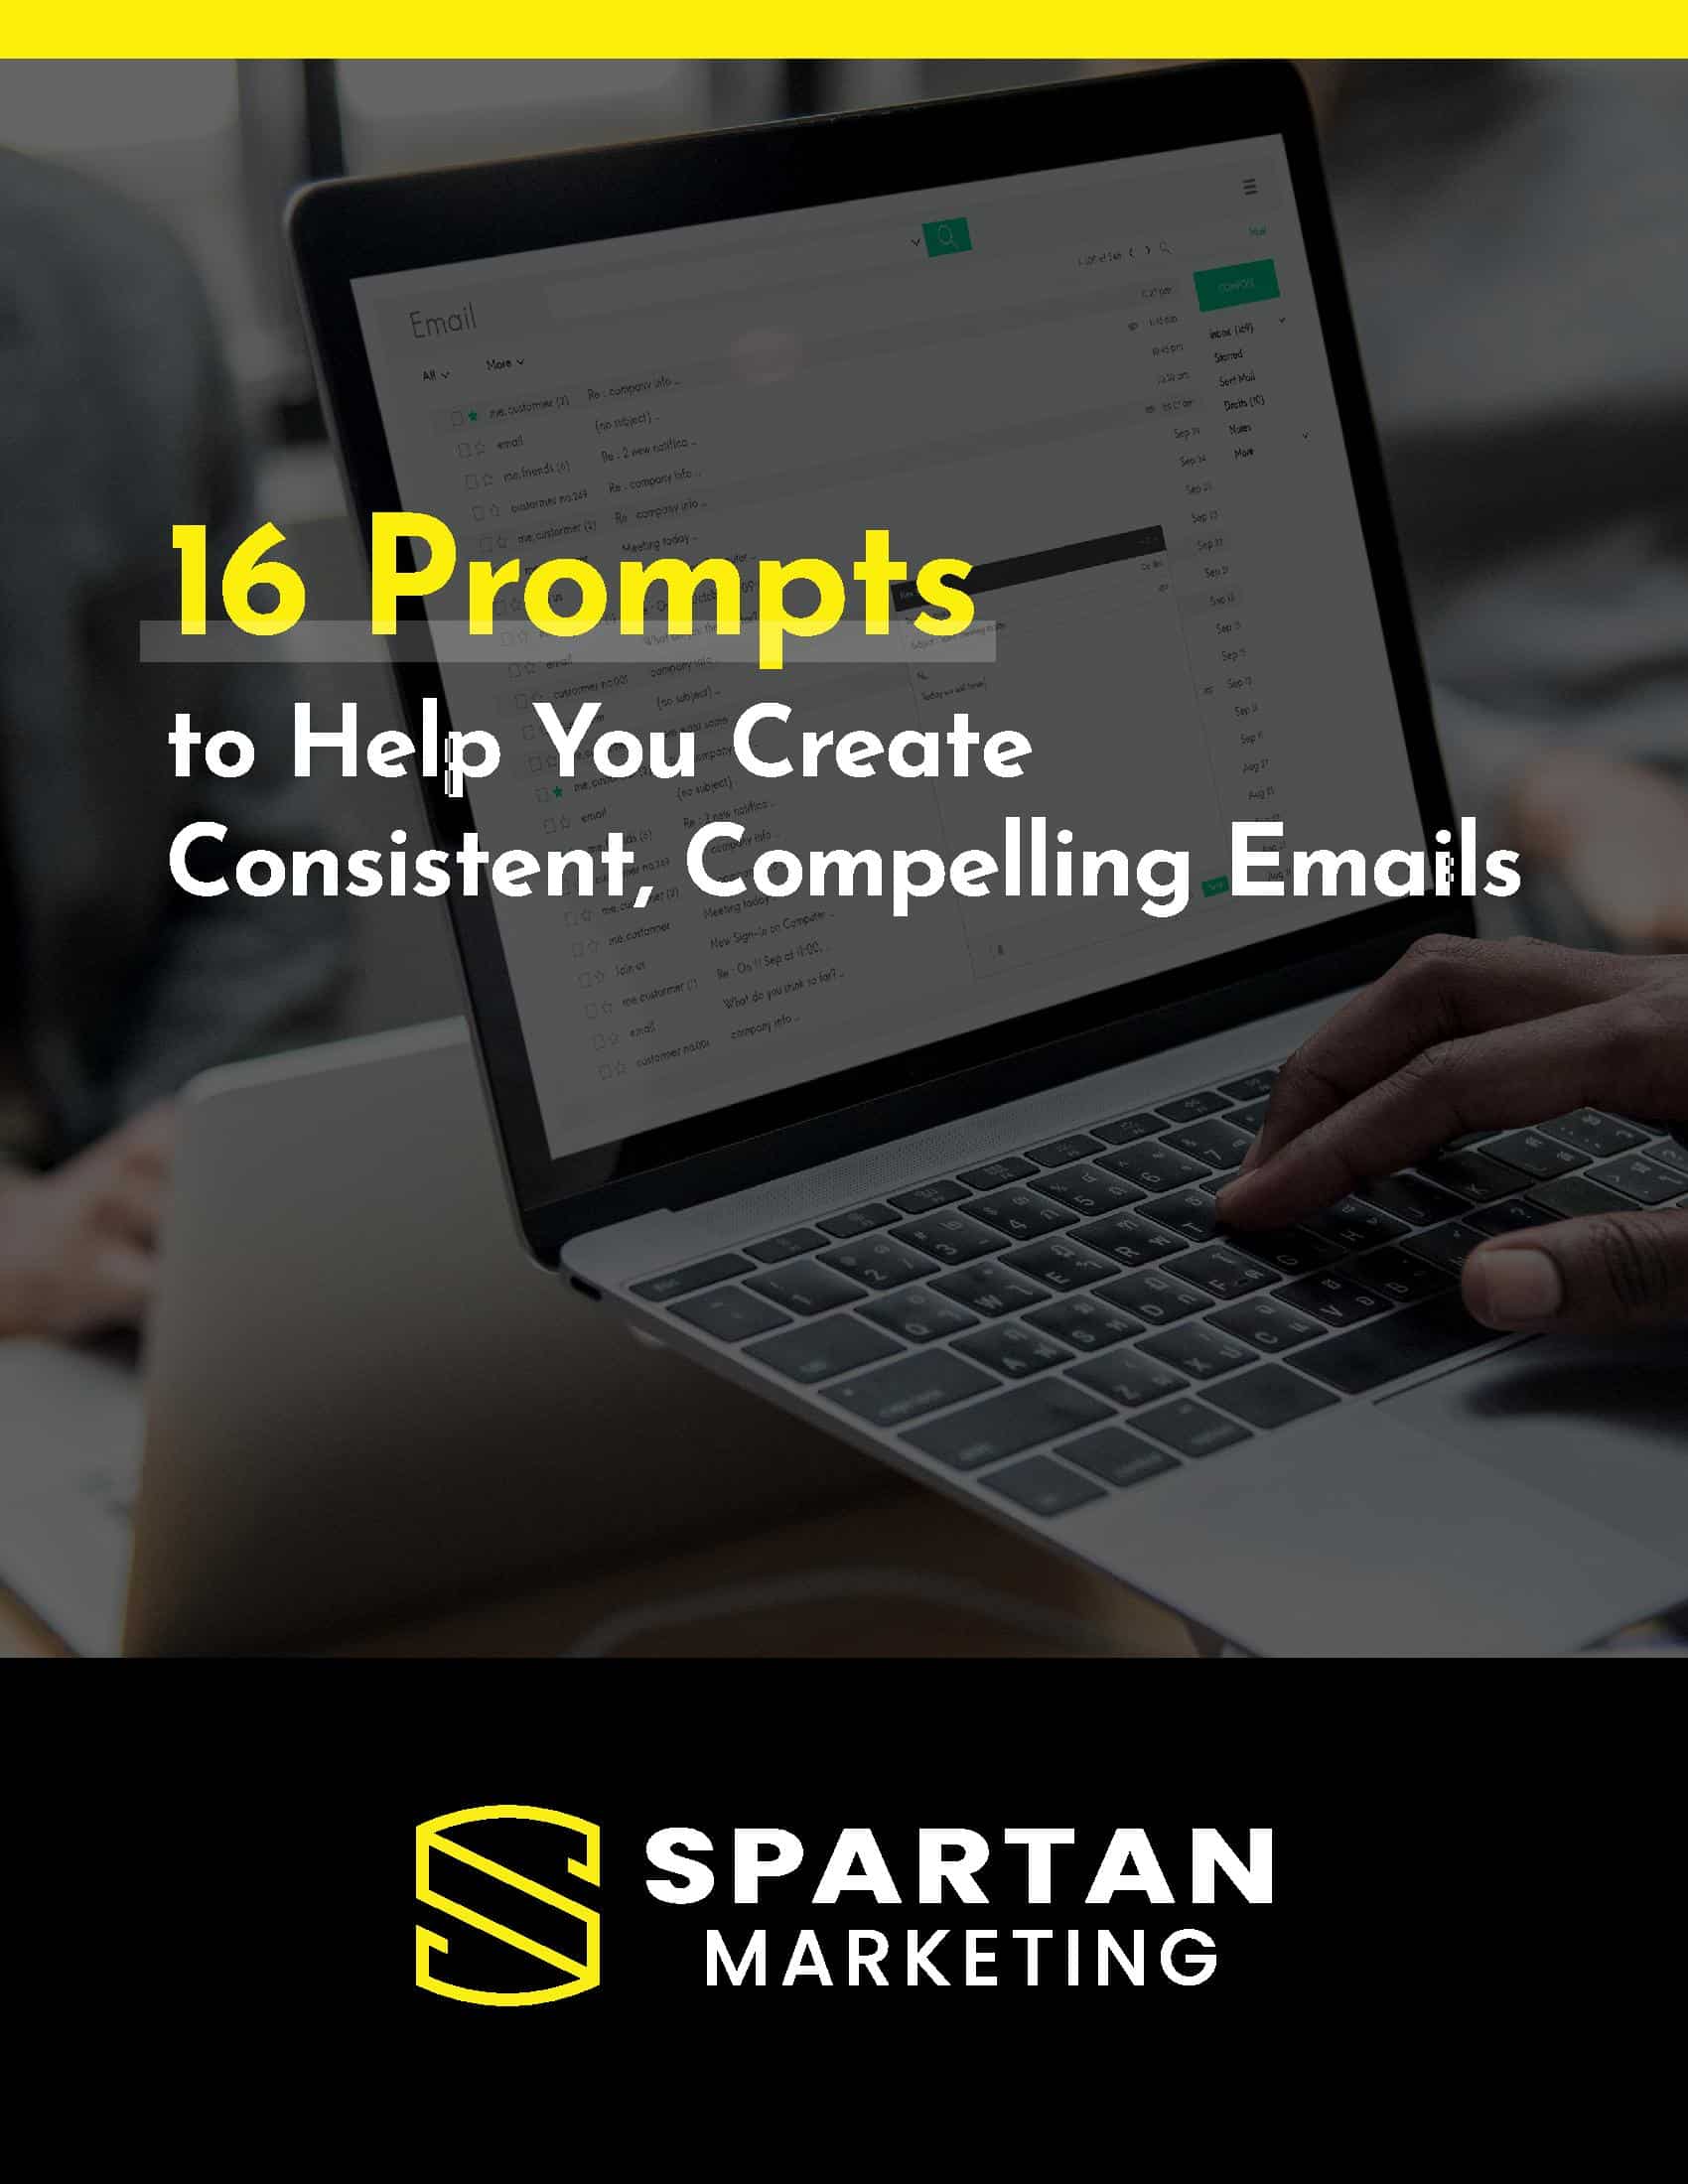 Spartan Marketing 16 Prompts